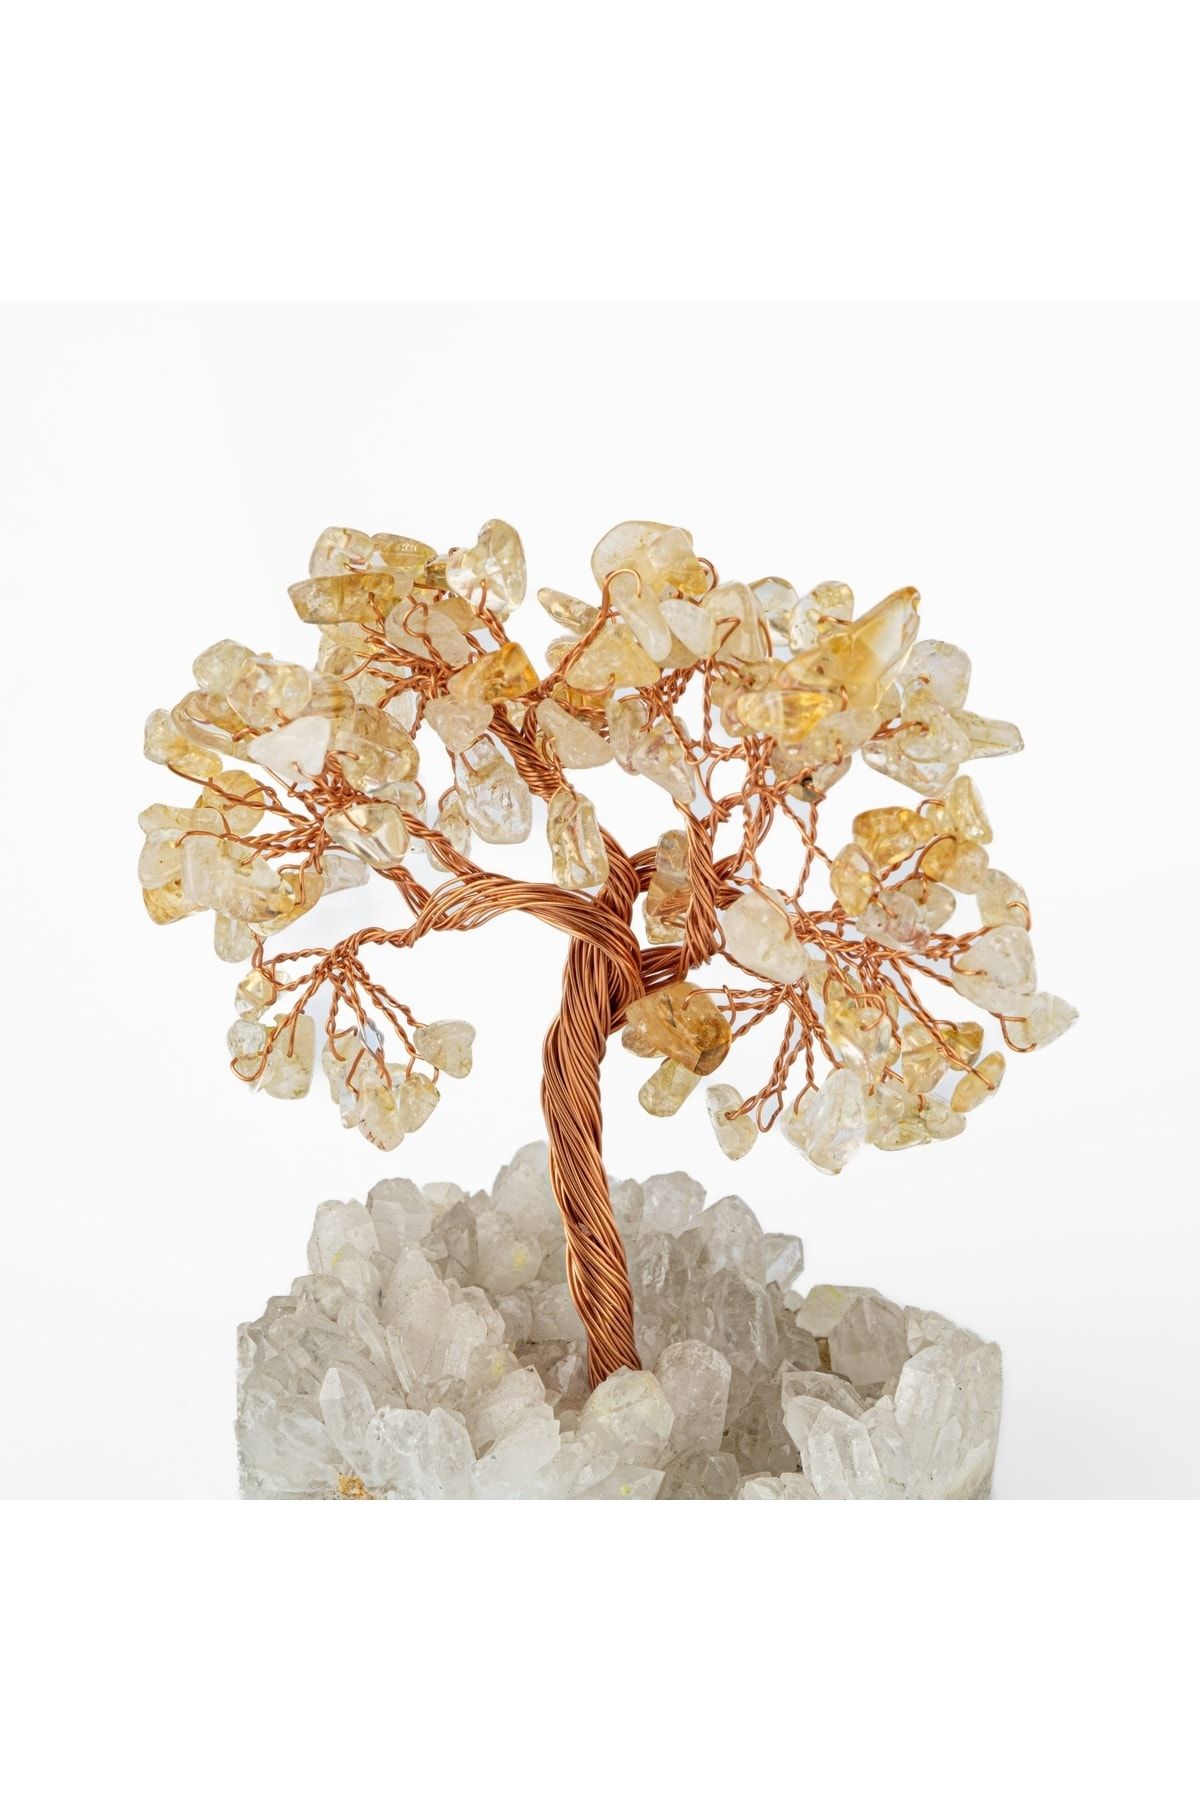 OSMANLI DOĞAL TAŞ Sitrin-kristal Kuvars Doğal Taş Dekoratif Ağaç